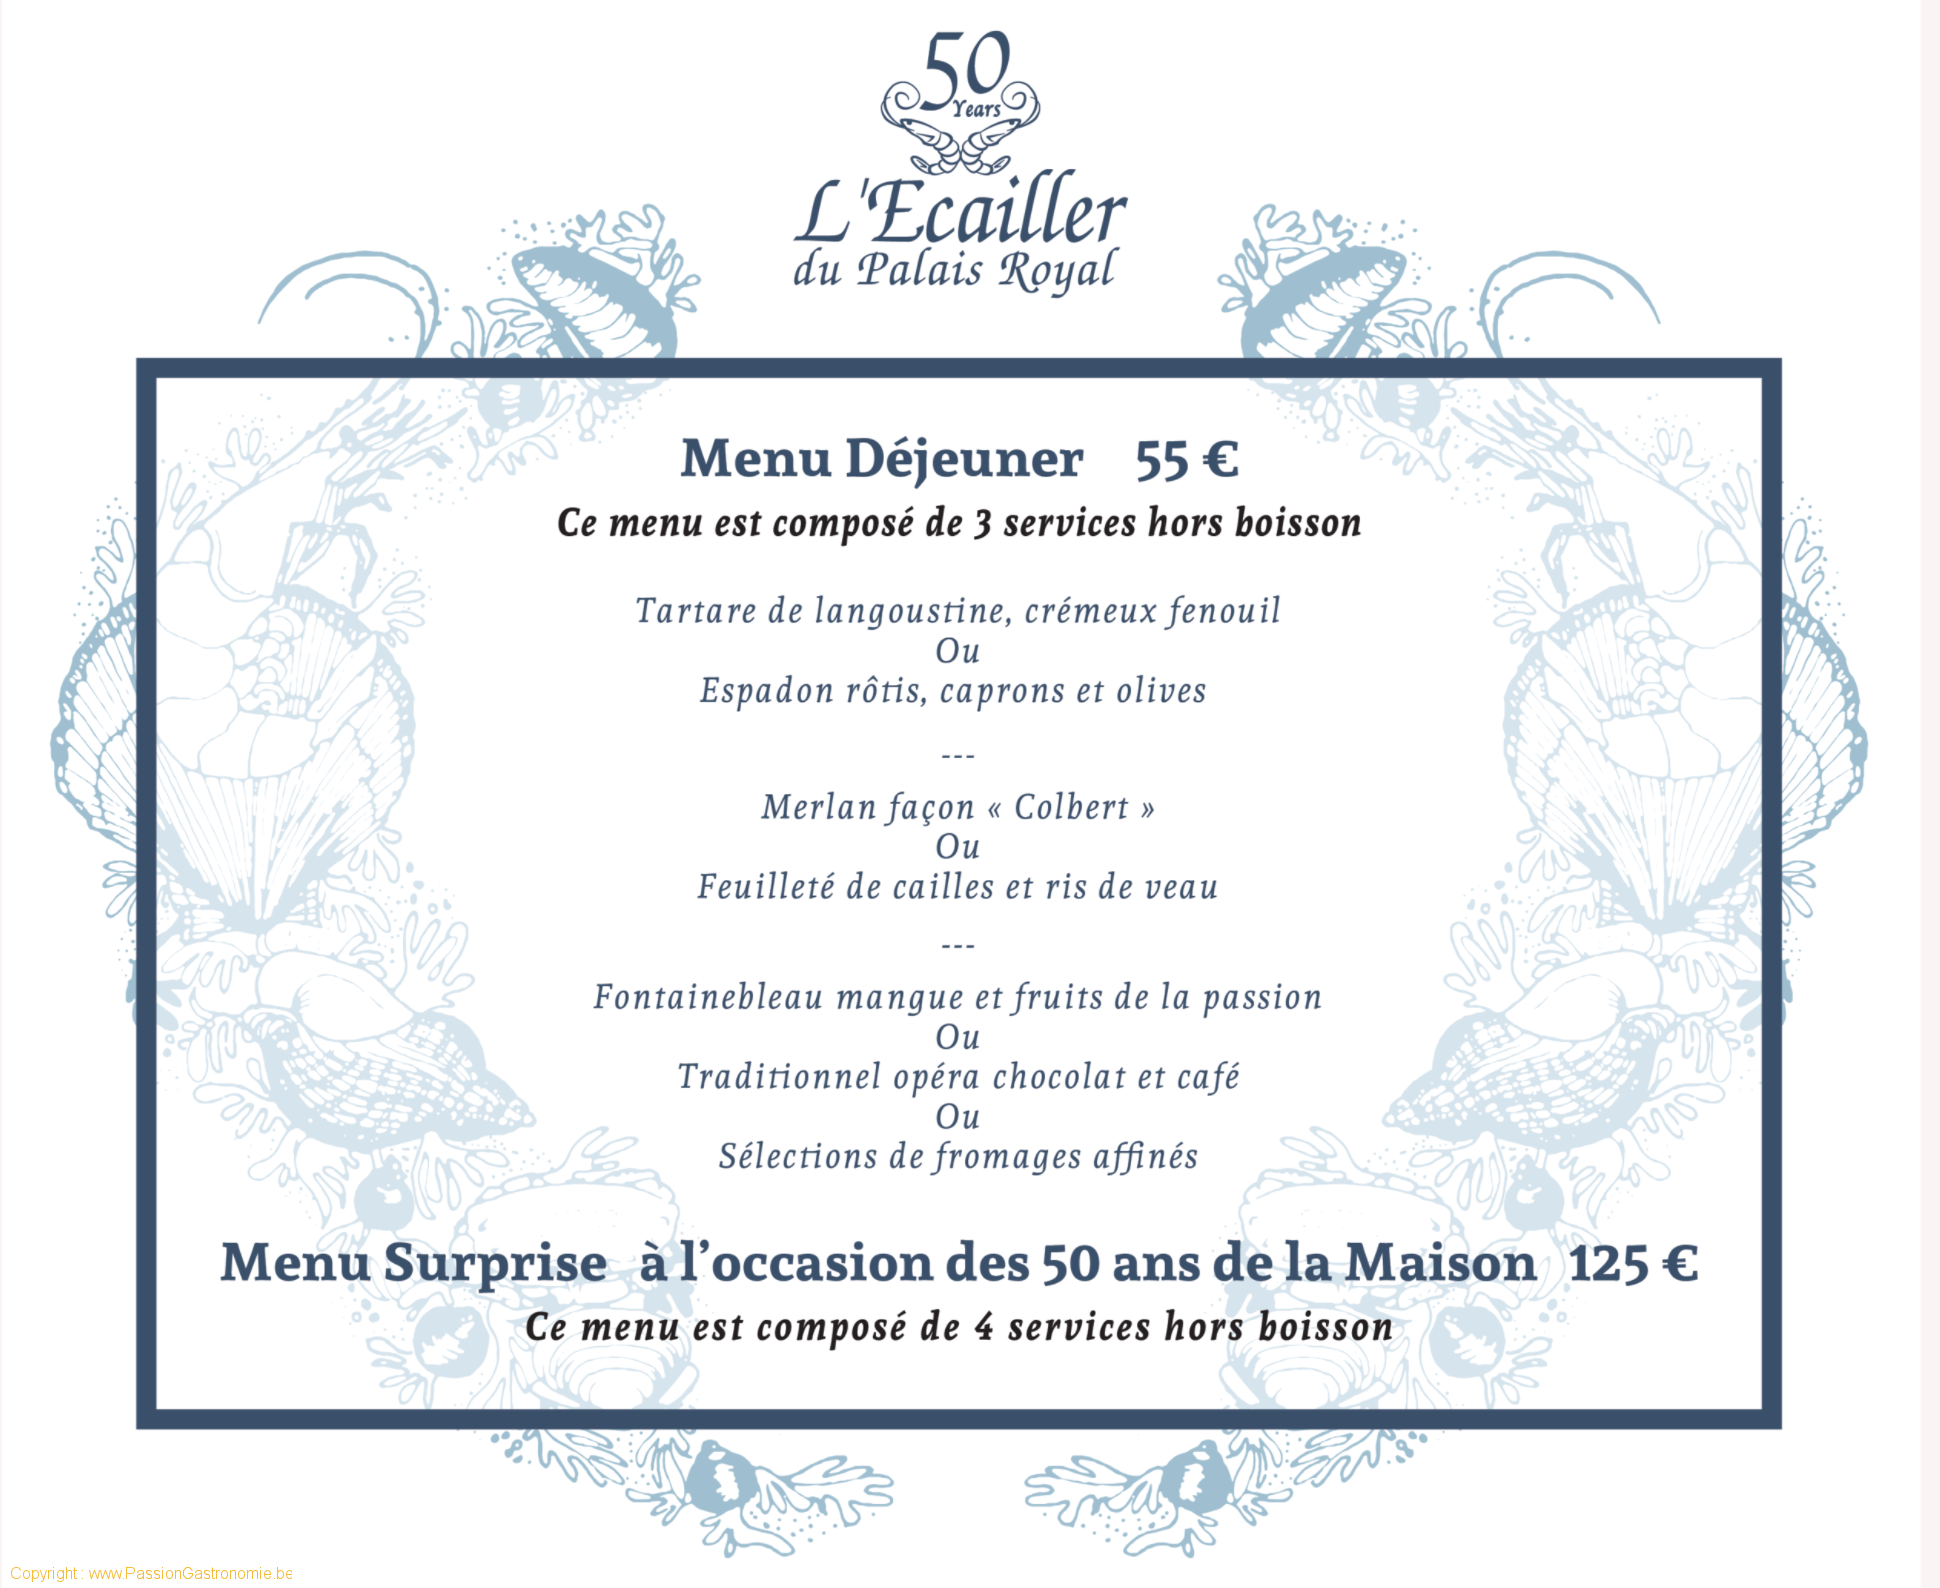 Restaurant L'Ecailler du Palais Royal - Le menu déjeuner